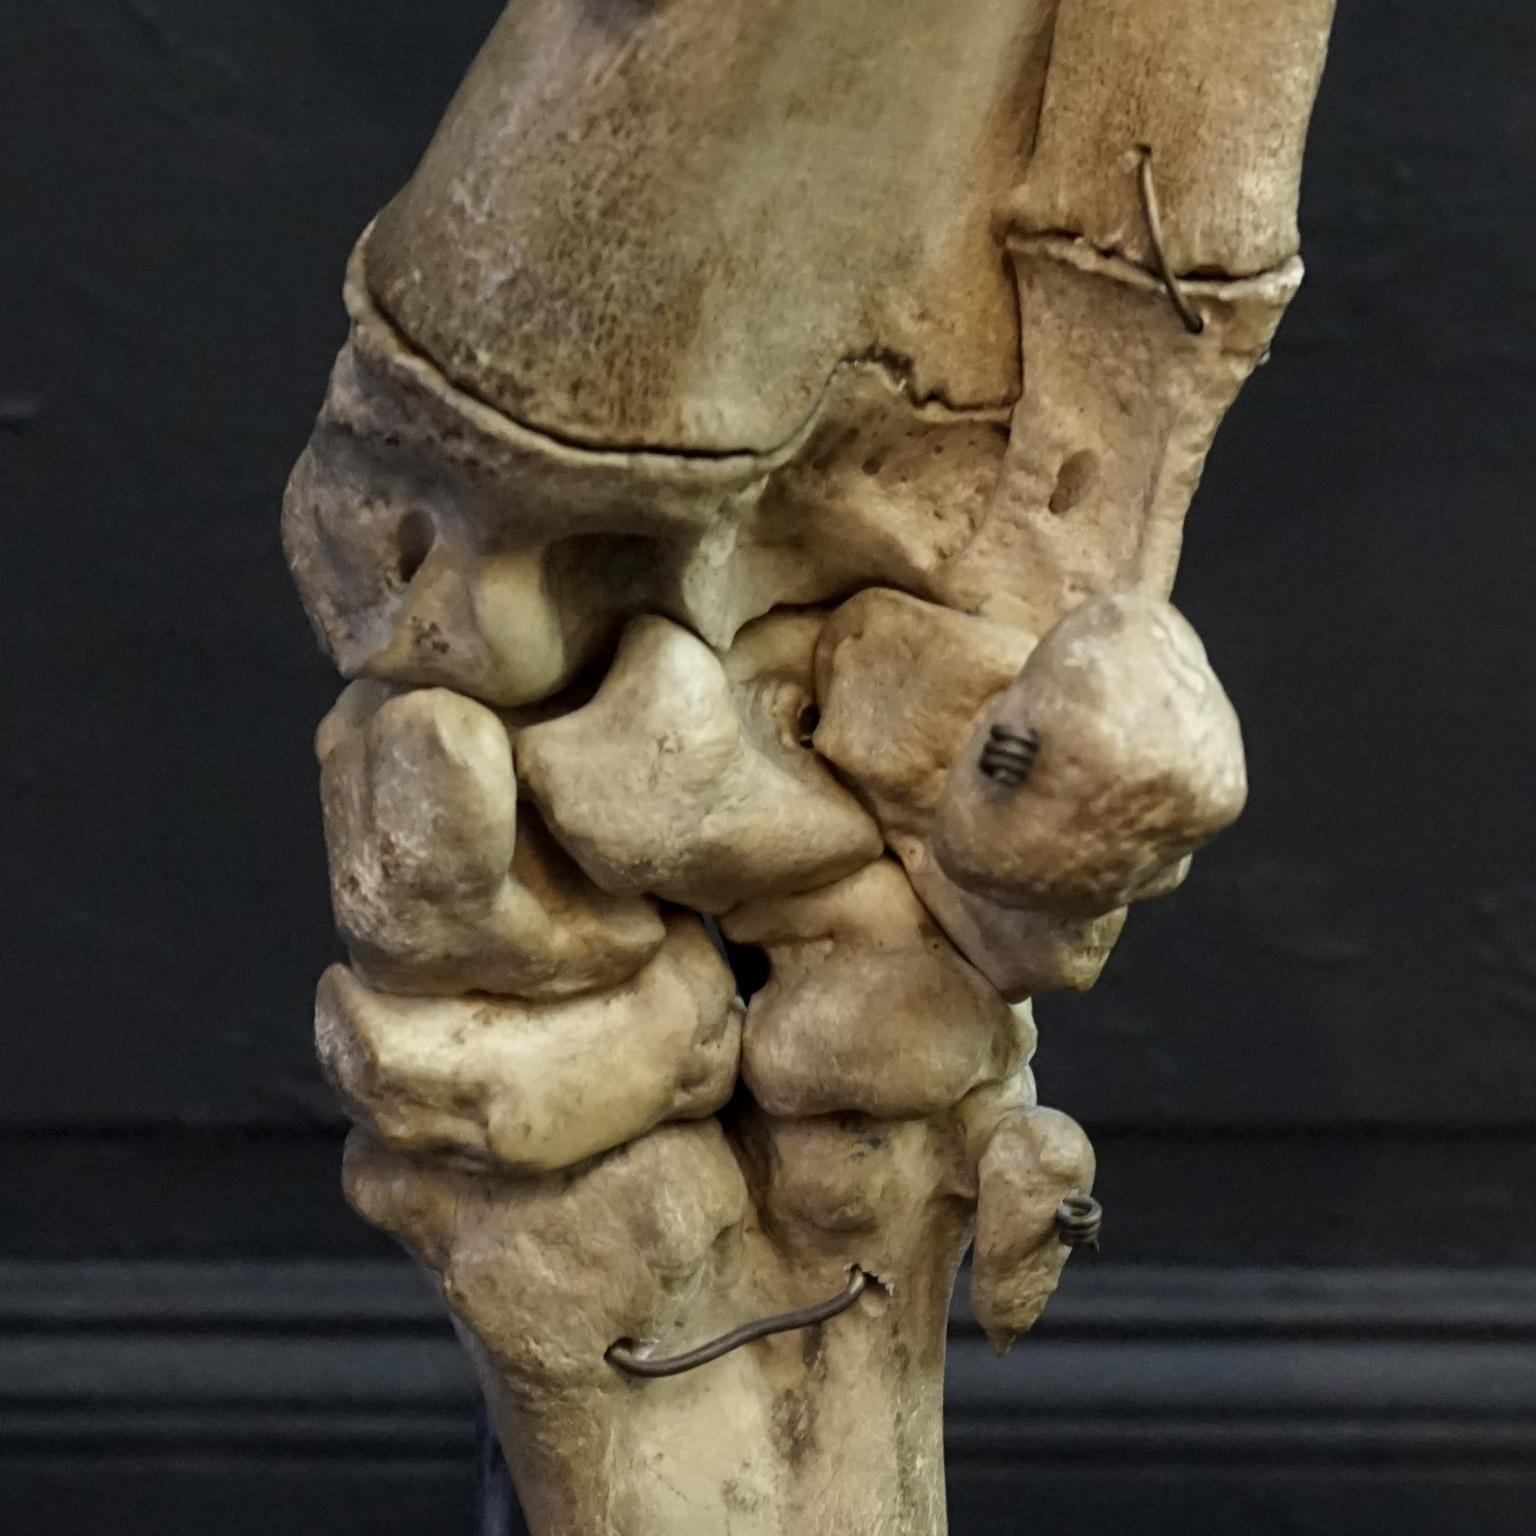 1920s Czech Taxidermy Cow Tur Domácí Bos Taurus Hind Leg Bone Classroom Study For Sale 7